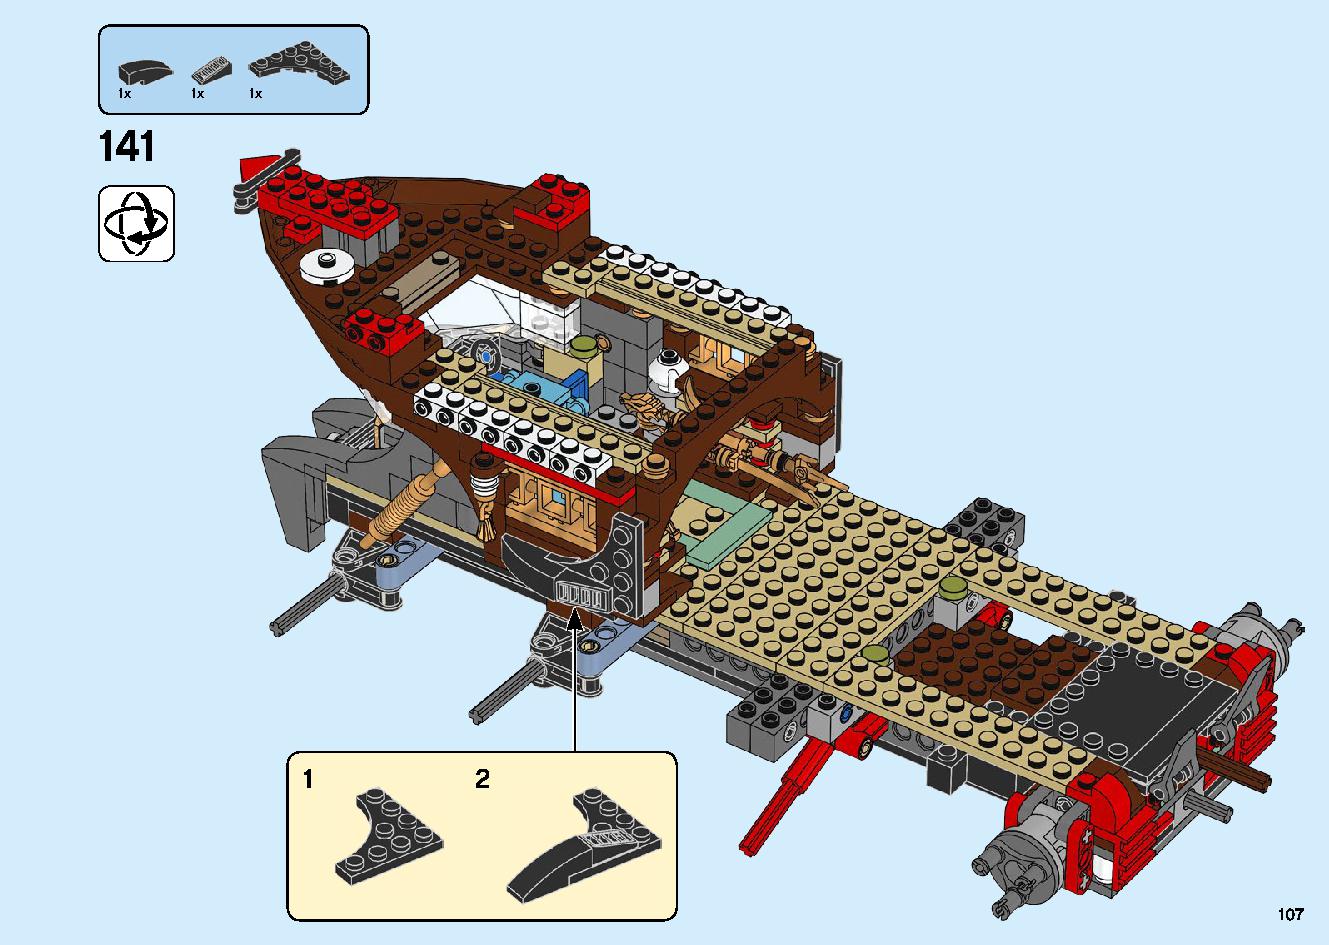 陸上戦艦バウンティ号 70677 レゴの商品情報 レゴの説明書・組立方法 107 page